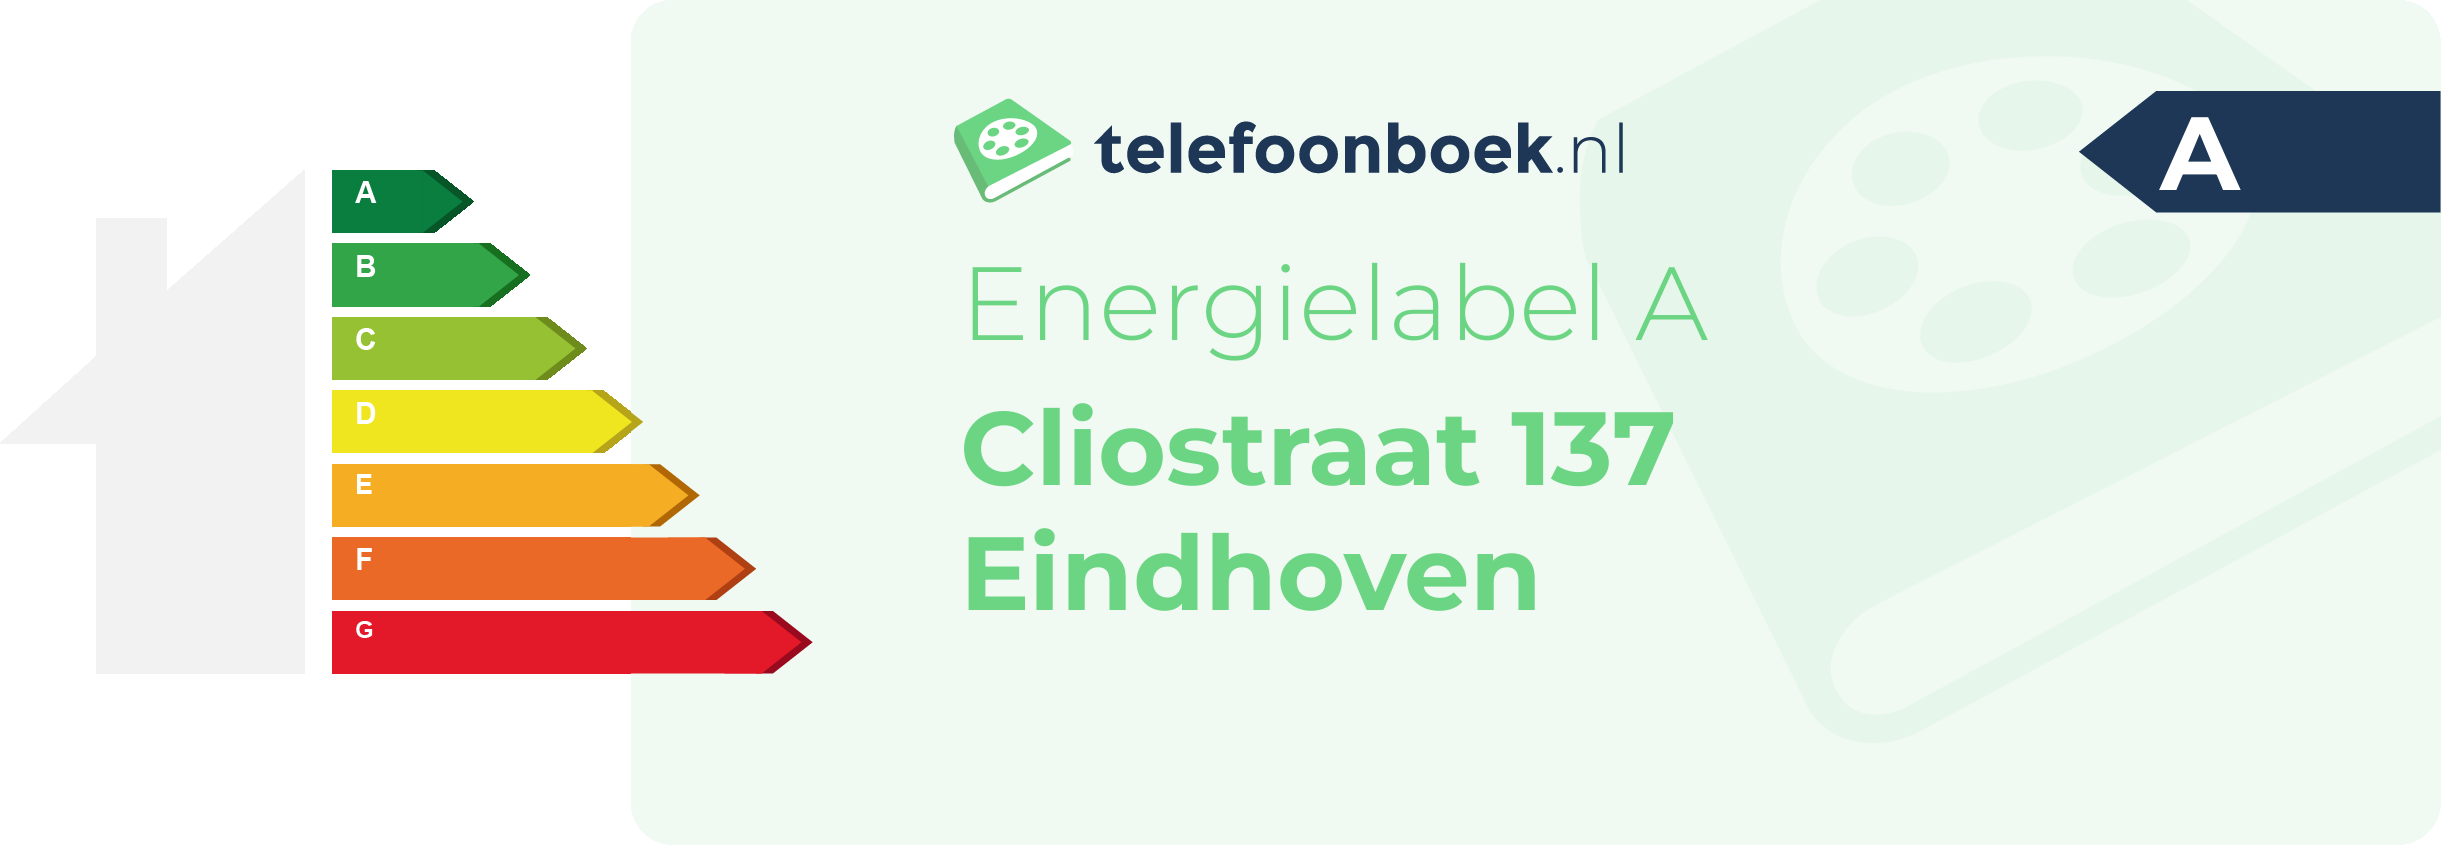 Energielabel Cliostraat 137 Eindhoven